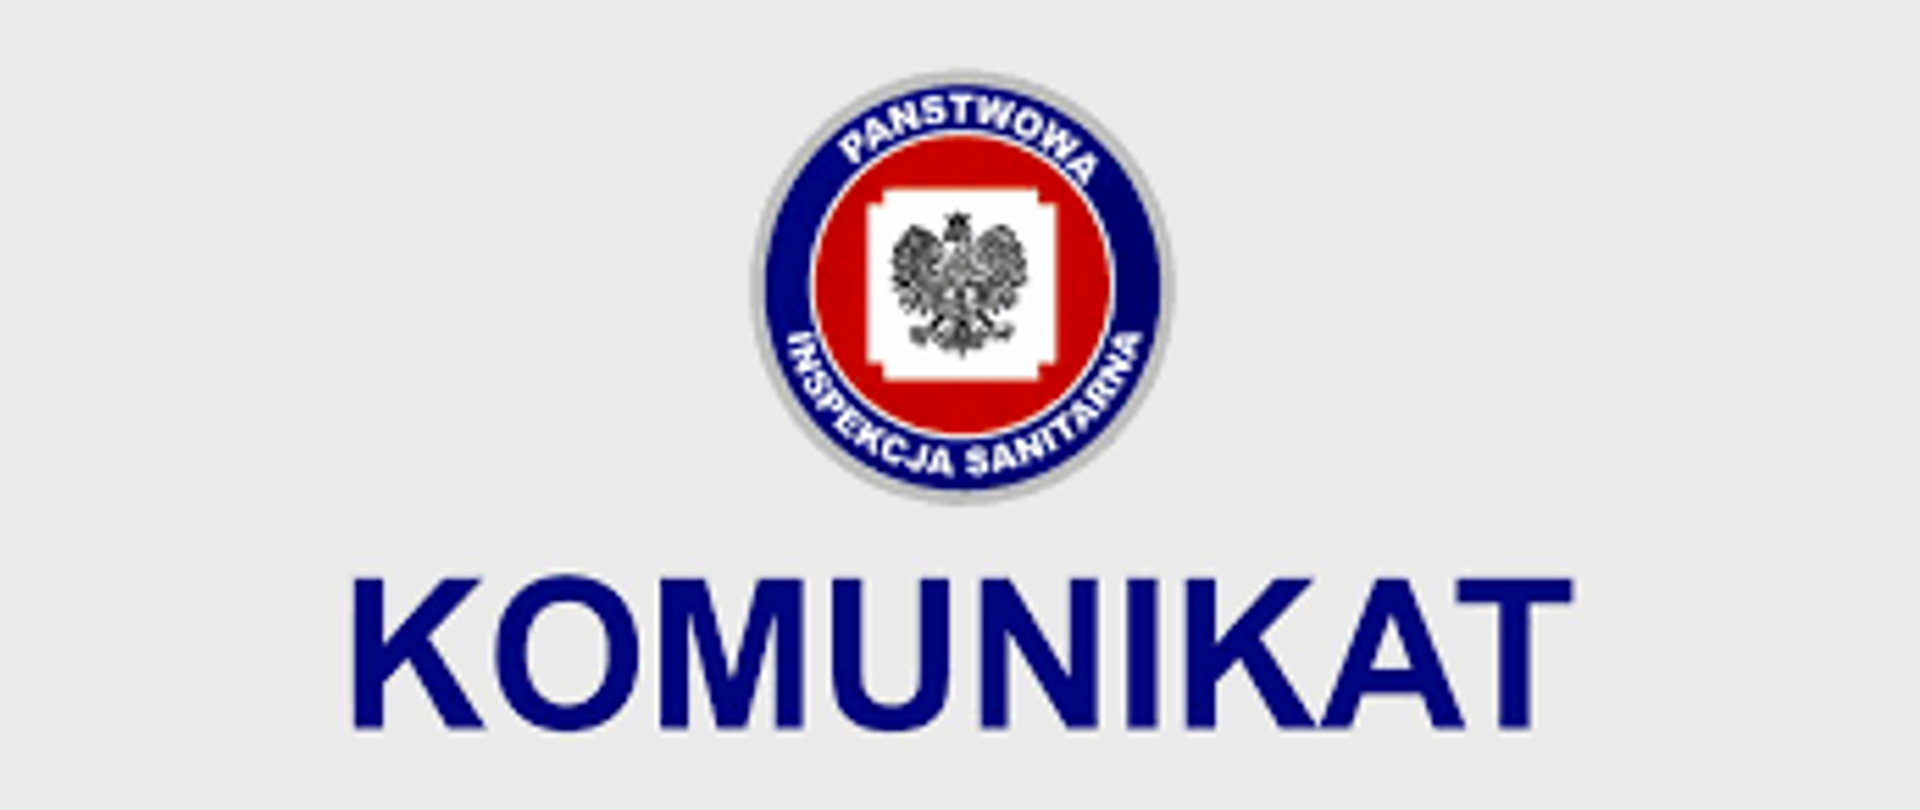 Logo Państwowej Inspekcji Sanitarnej oraz hasło Komunikat